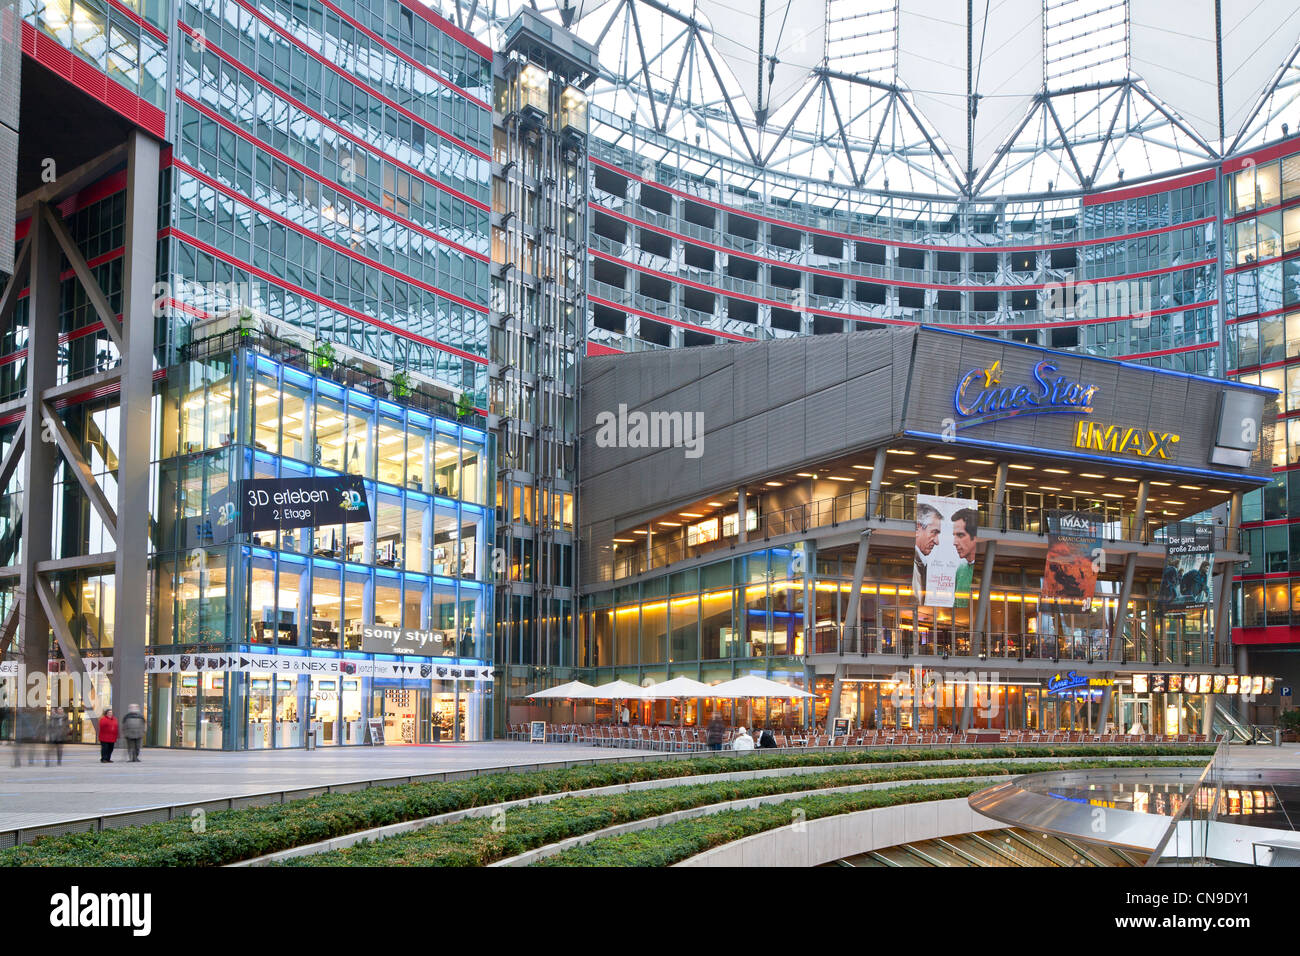 Allemagne, Berlin, Mitte, Postdamer Platz, Sony Center construit par Helmut Jahn entre 1996 et 2000, Sony Plaza et son film en 3D Banque D'Images